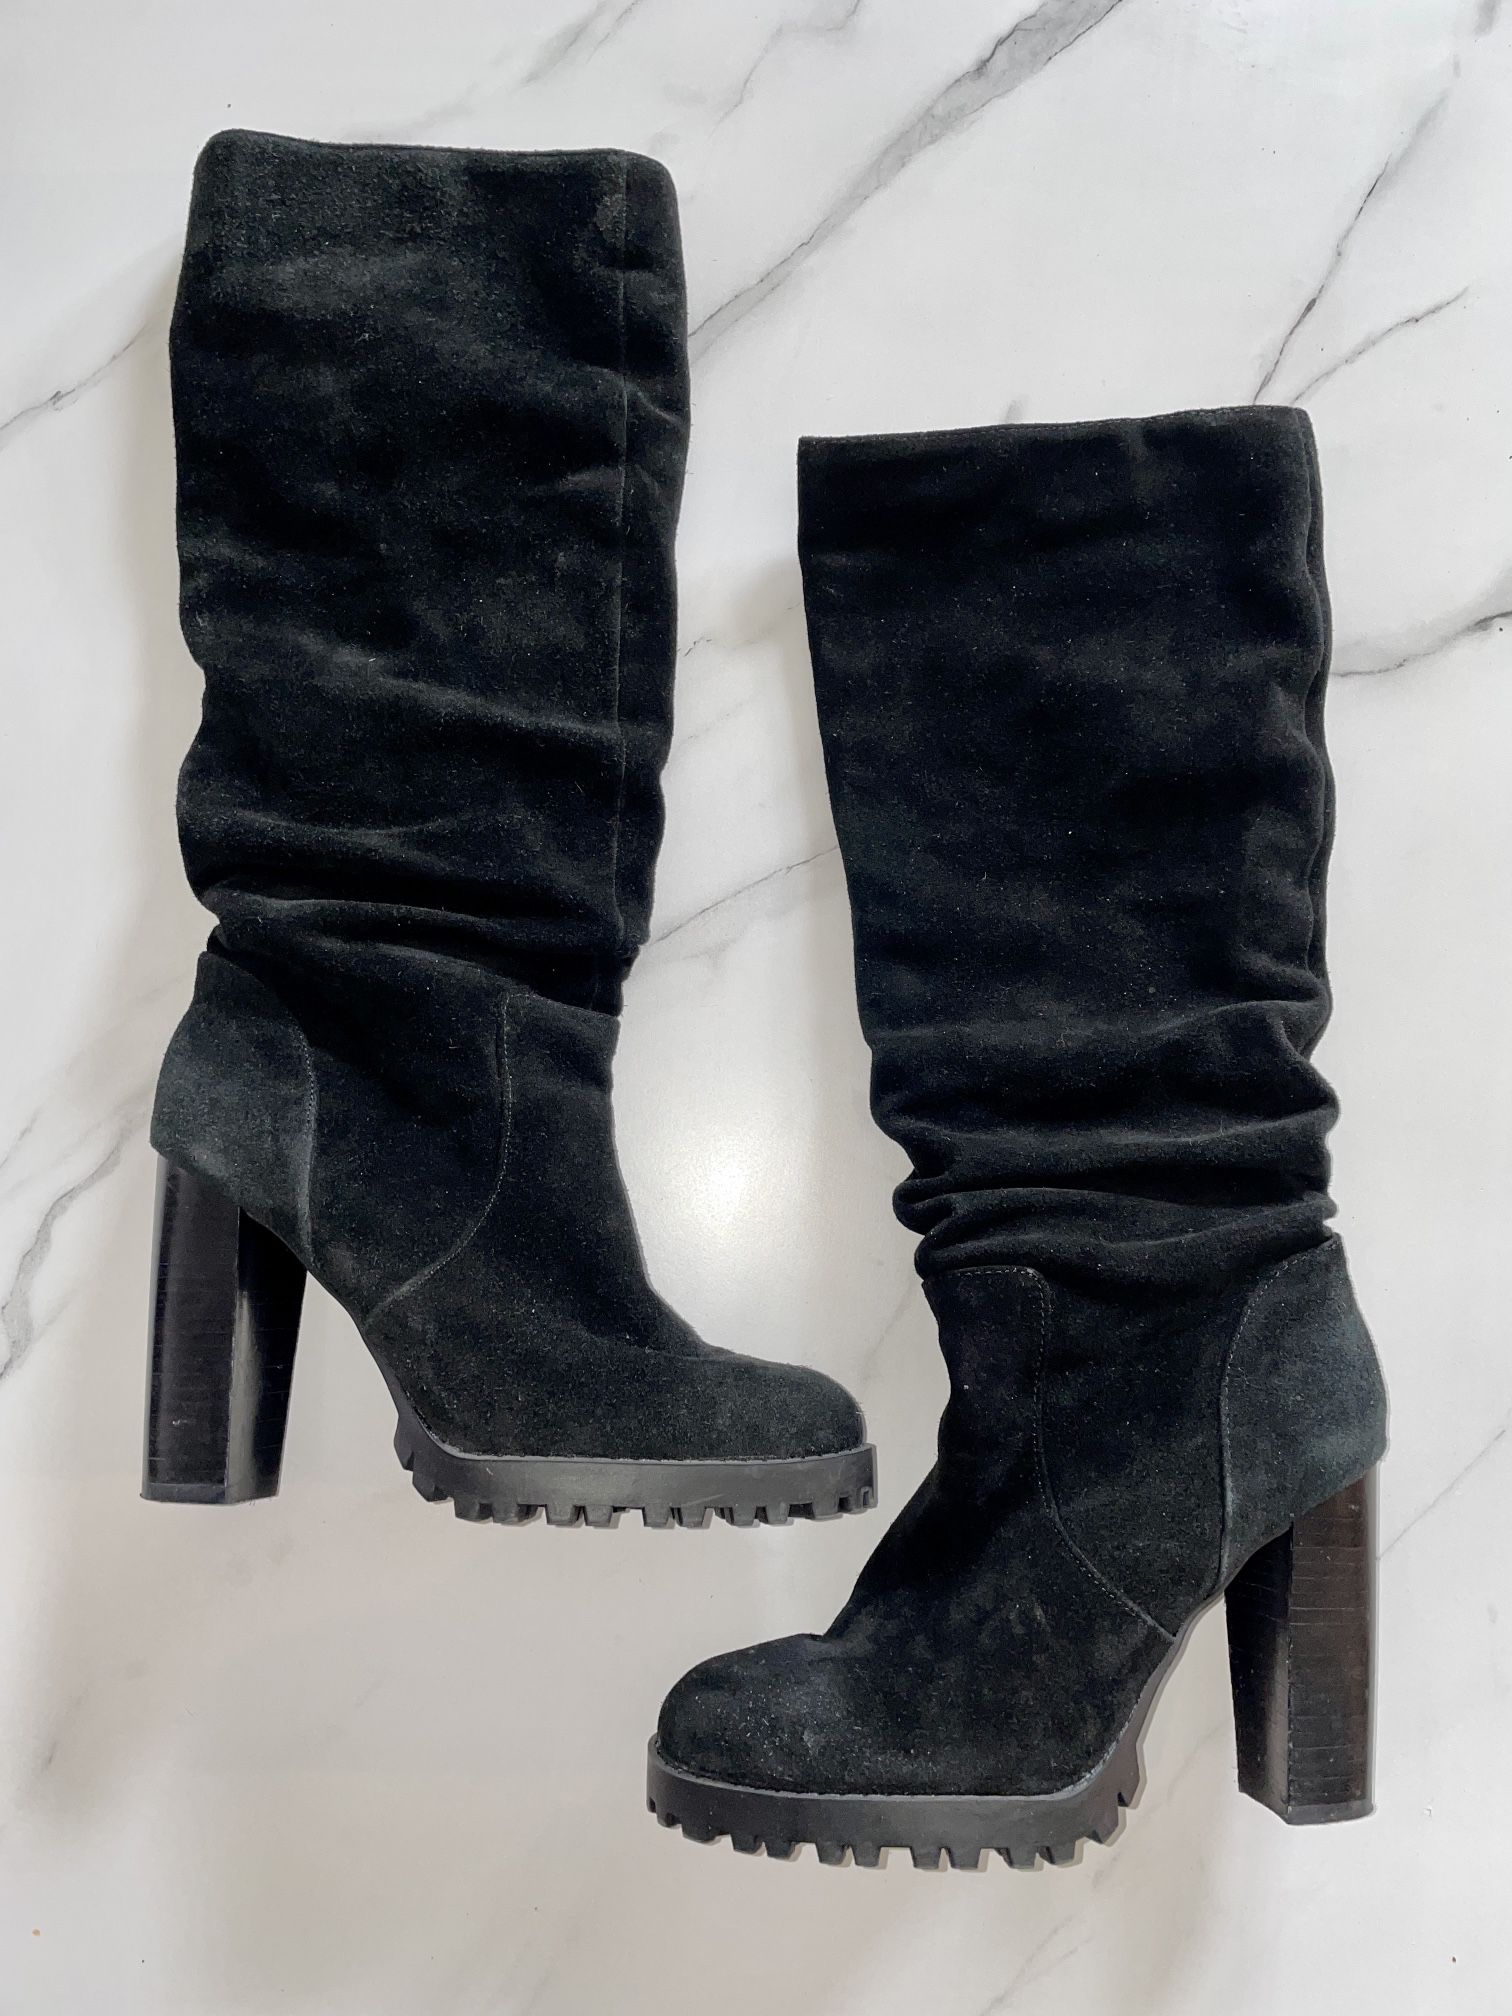 Aldo Black Velvet Boots NEW Size 7